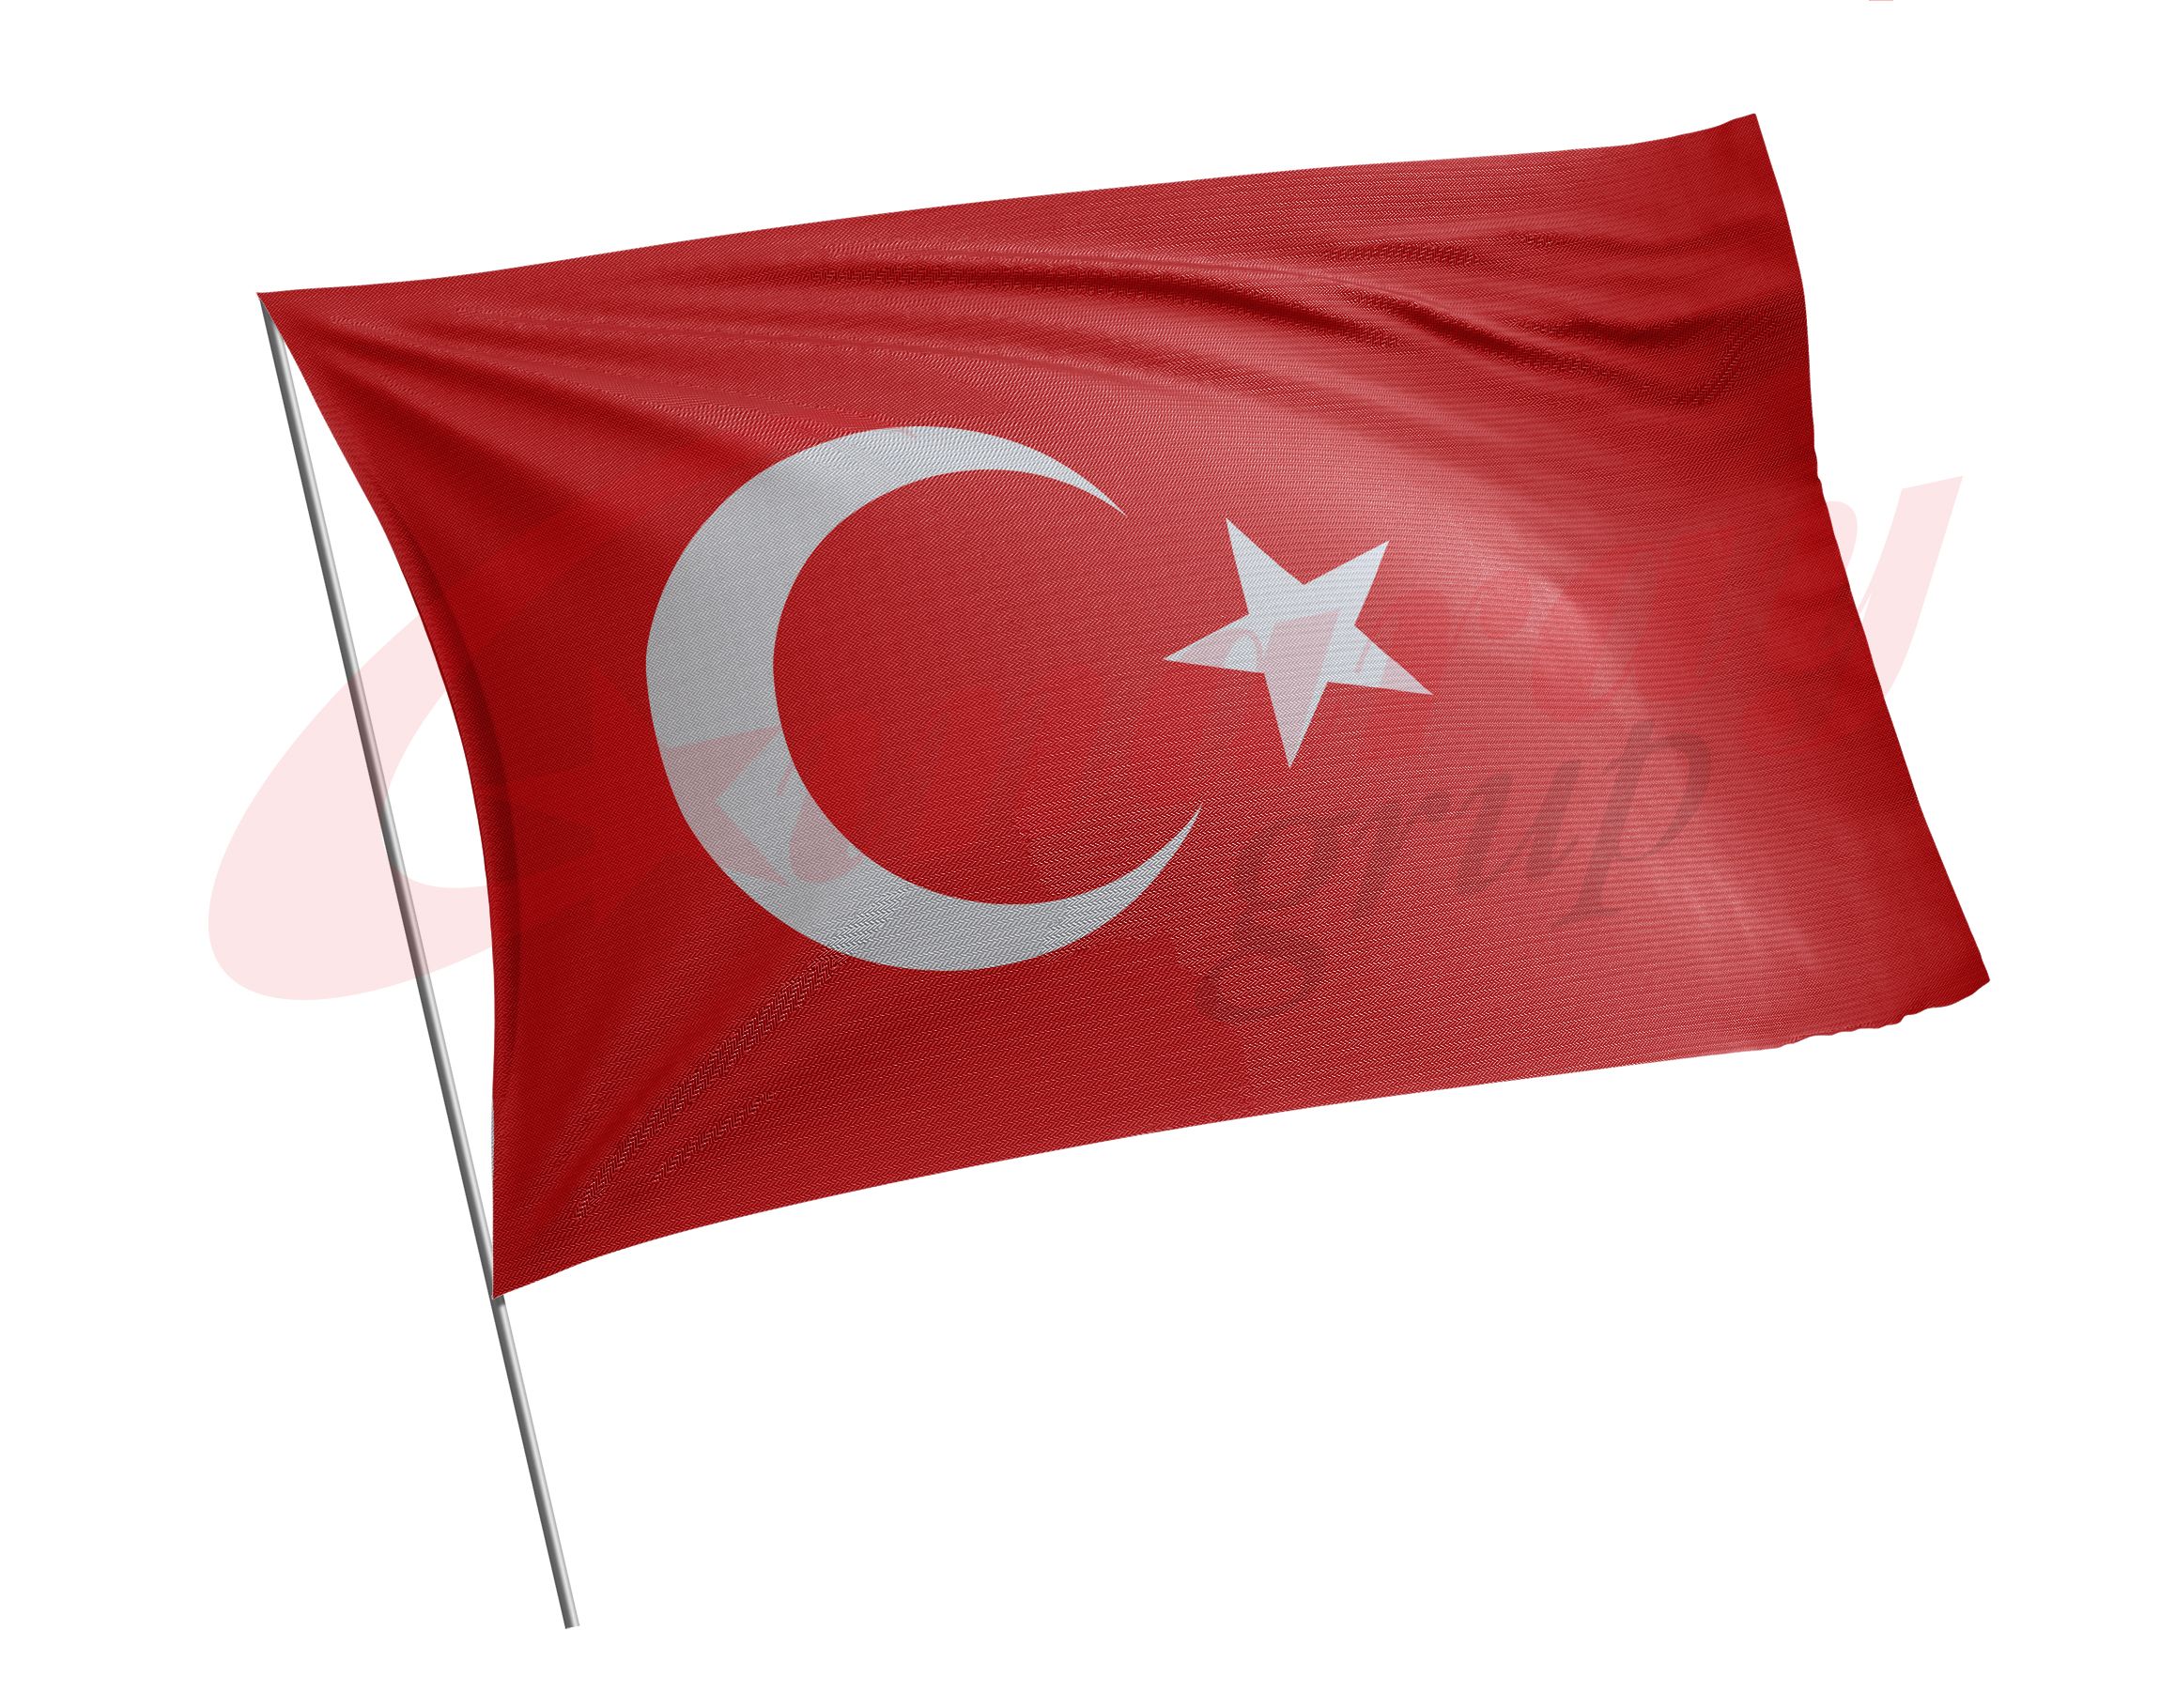 Türk Bayrağı 100x150 cm